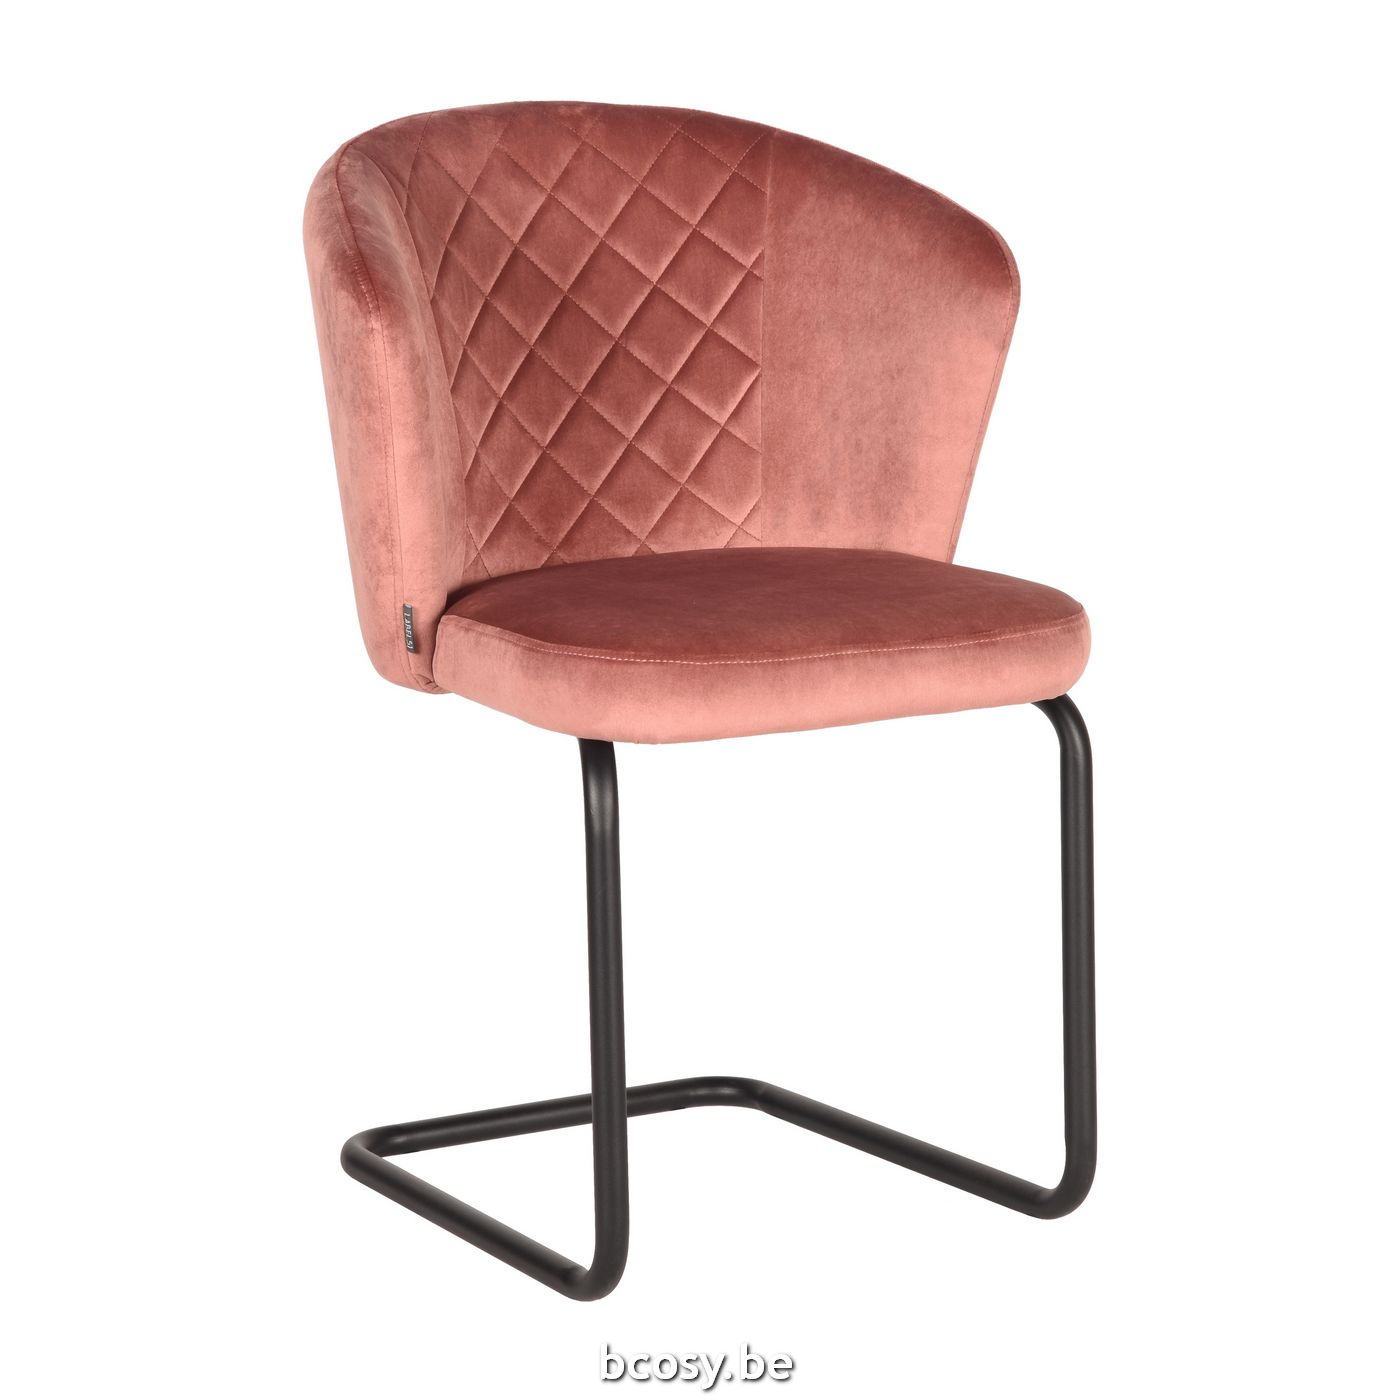 Liever geleidelijk laat staan LABEL51 Eetkamerstoel Flow Roze Fluweel LABEL51 UK-30.254 <span  style="font-size: 6pt;"> stoelen eetkamerstoelen eethoekstoelen  eettafelstoelen eetstoelen chaises de repas dining chairs stuhl stuehle  </span> - Stoelen Krukken - BCosy.be Lifestyle ...